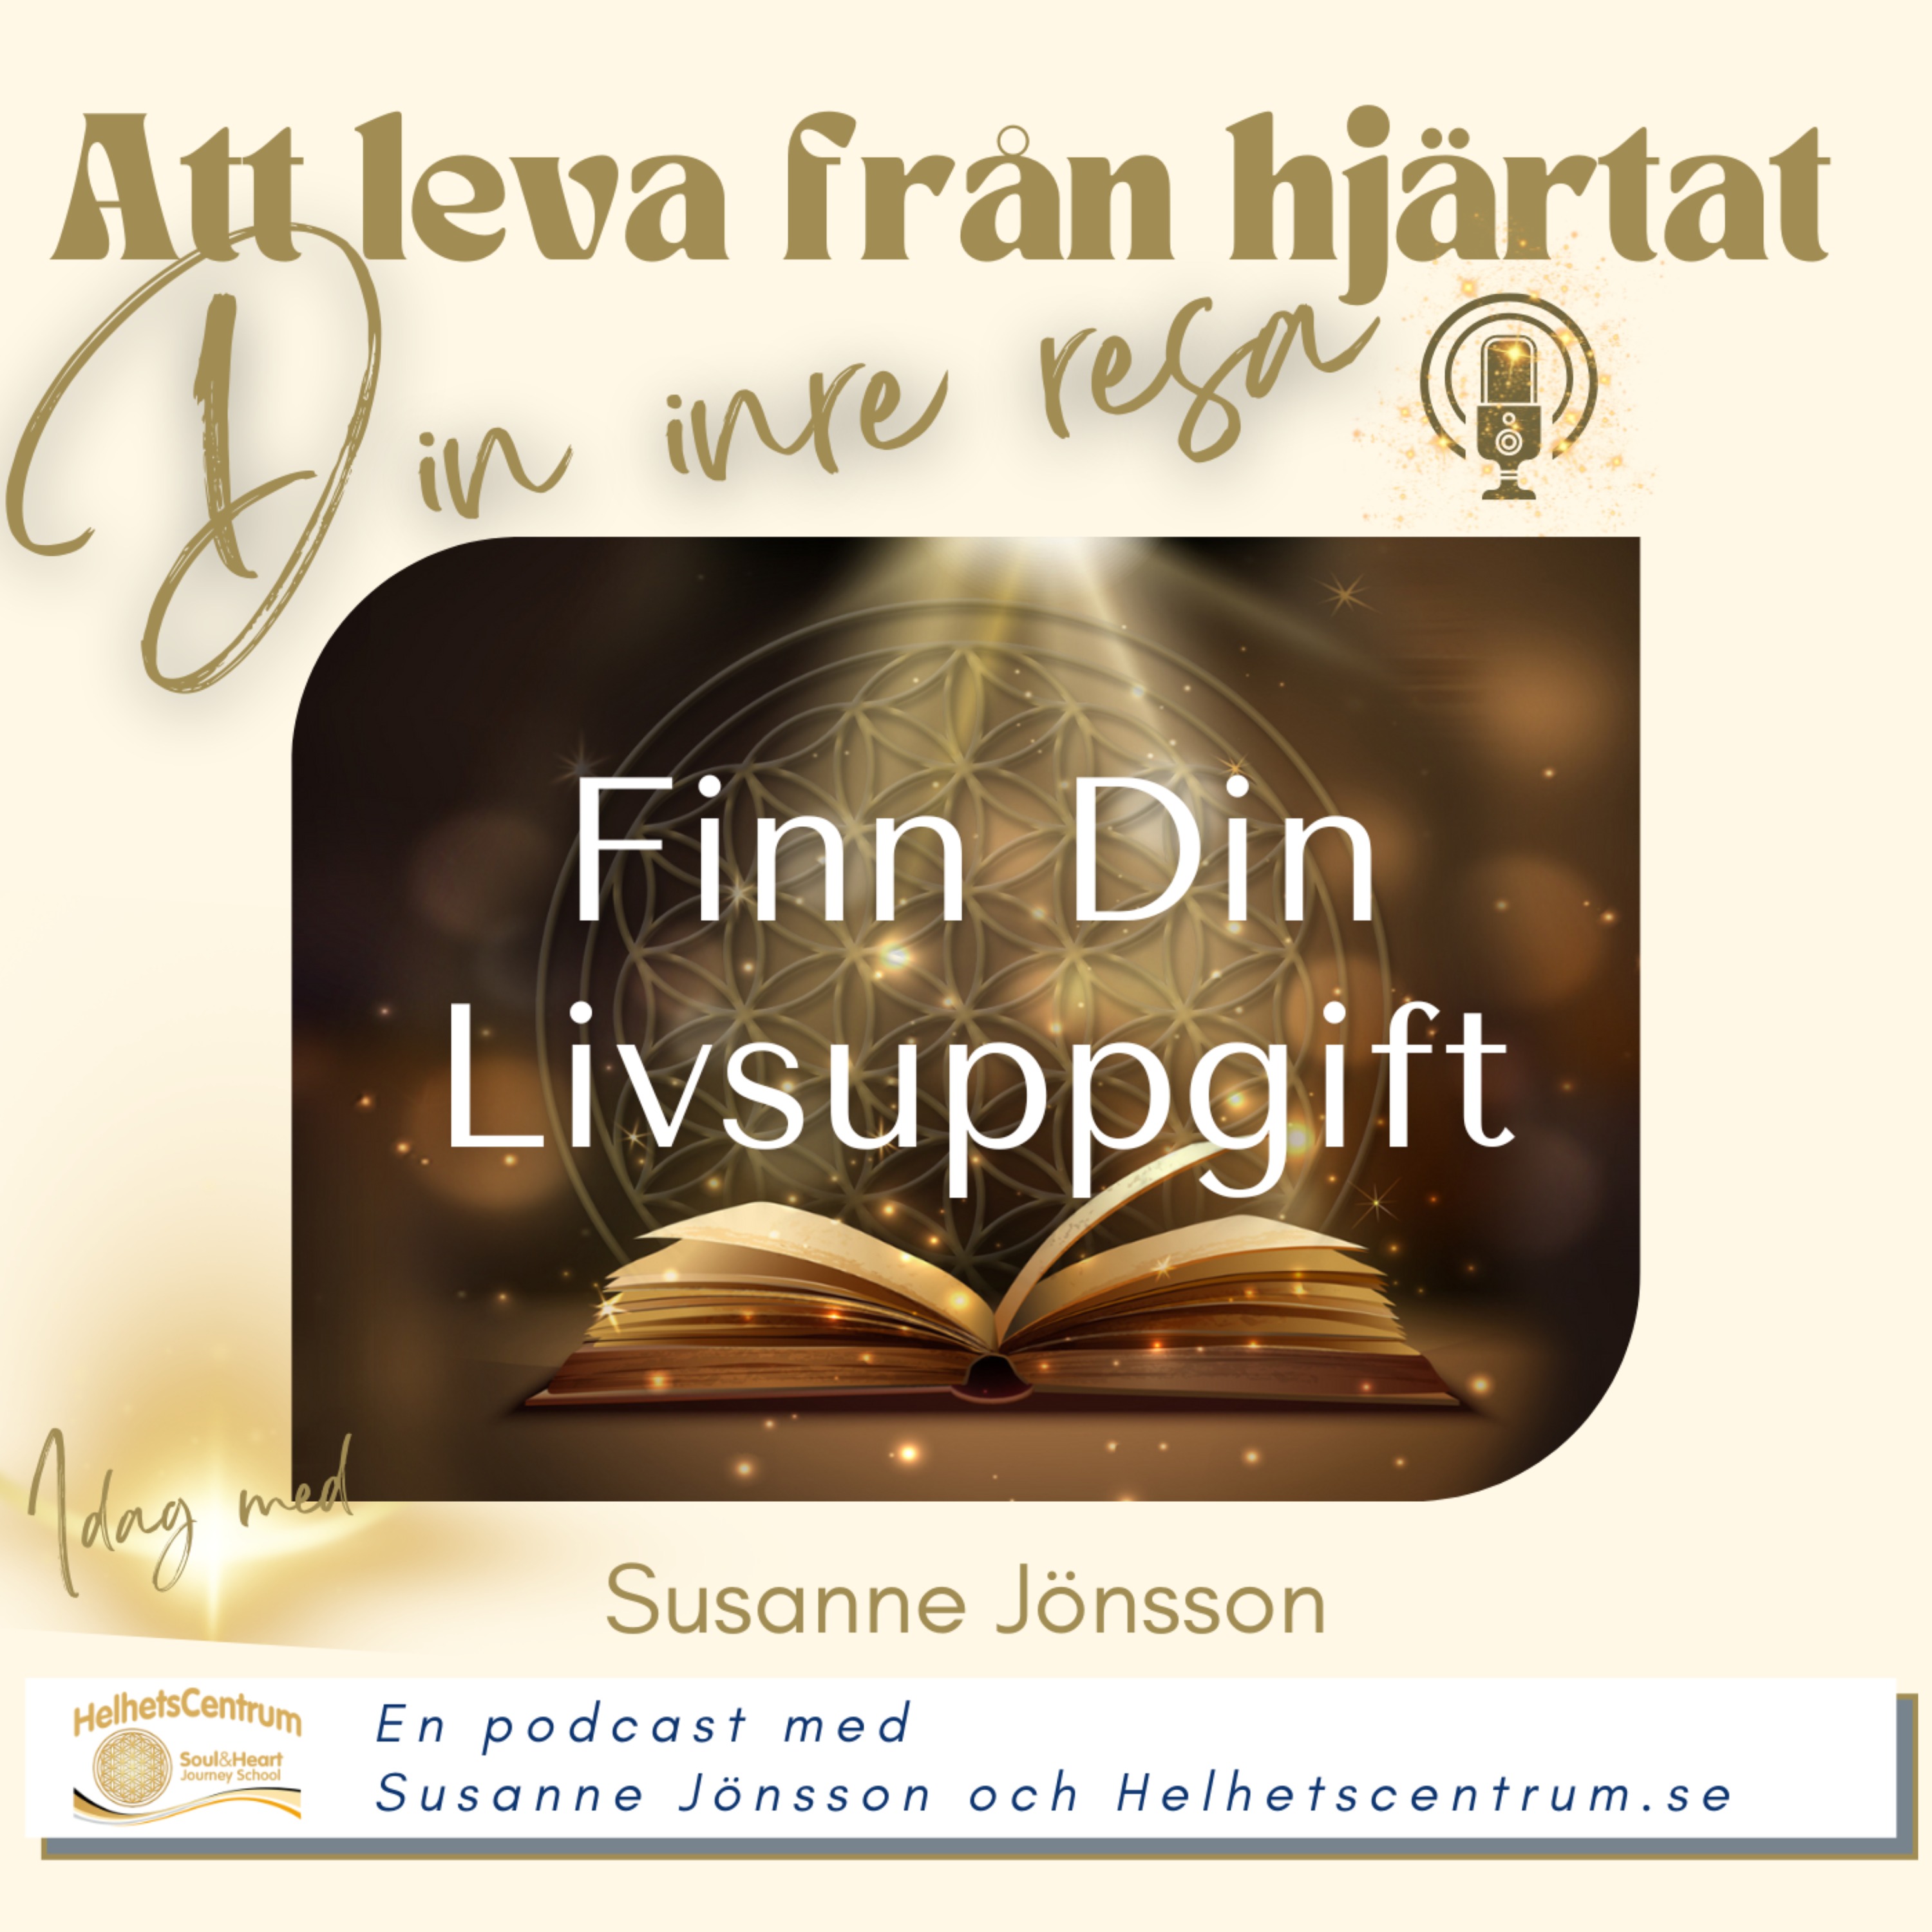 Susanne Jönsson om hur du kan Finna din livsuppgift